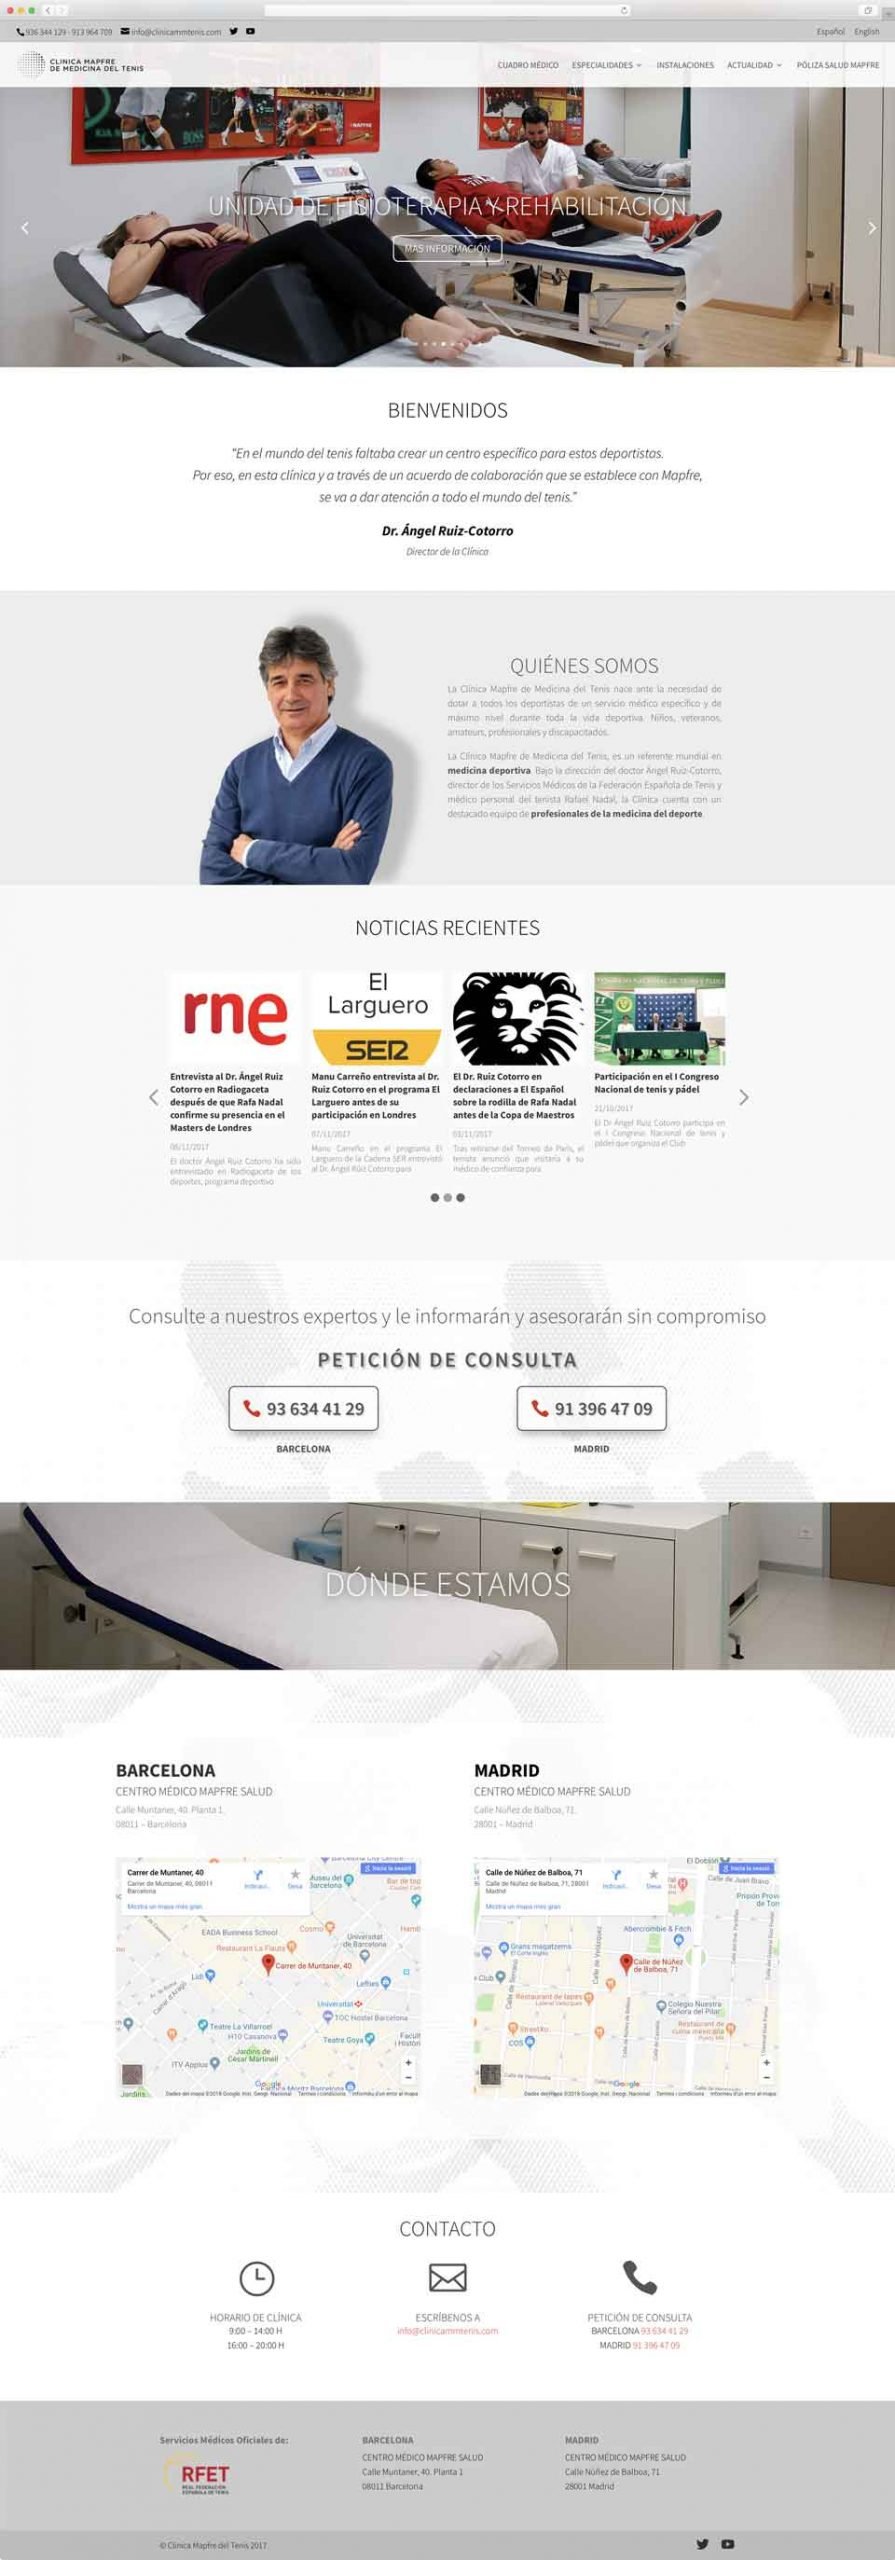 Muestra 1 de diseño web del proyecto Clínica Mapfre de Medicina del Tenis, realizado por Byte Imatge y Just the web